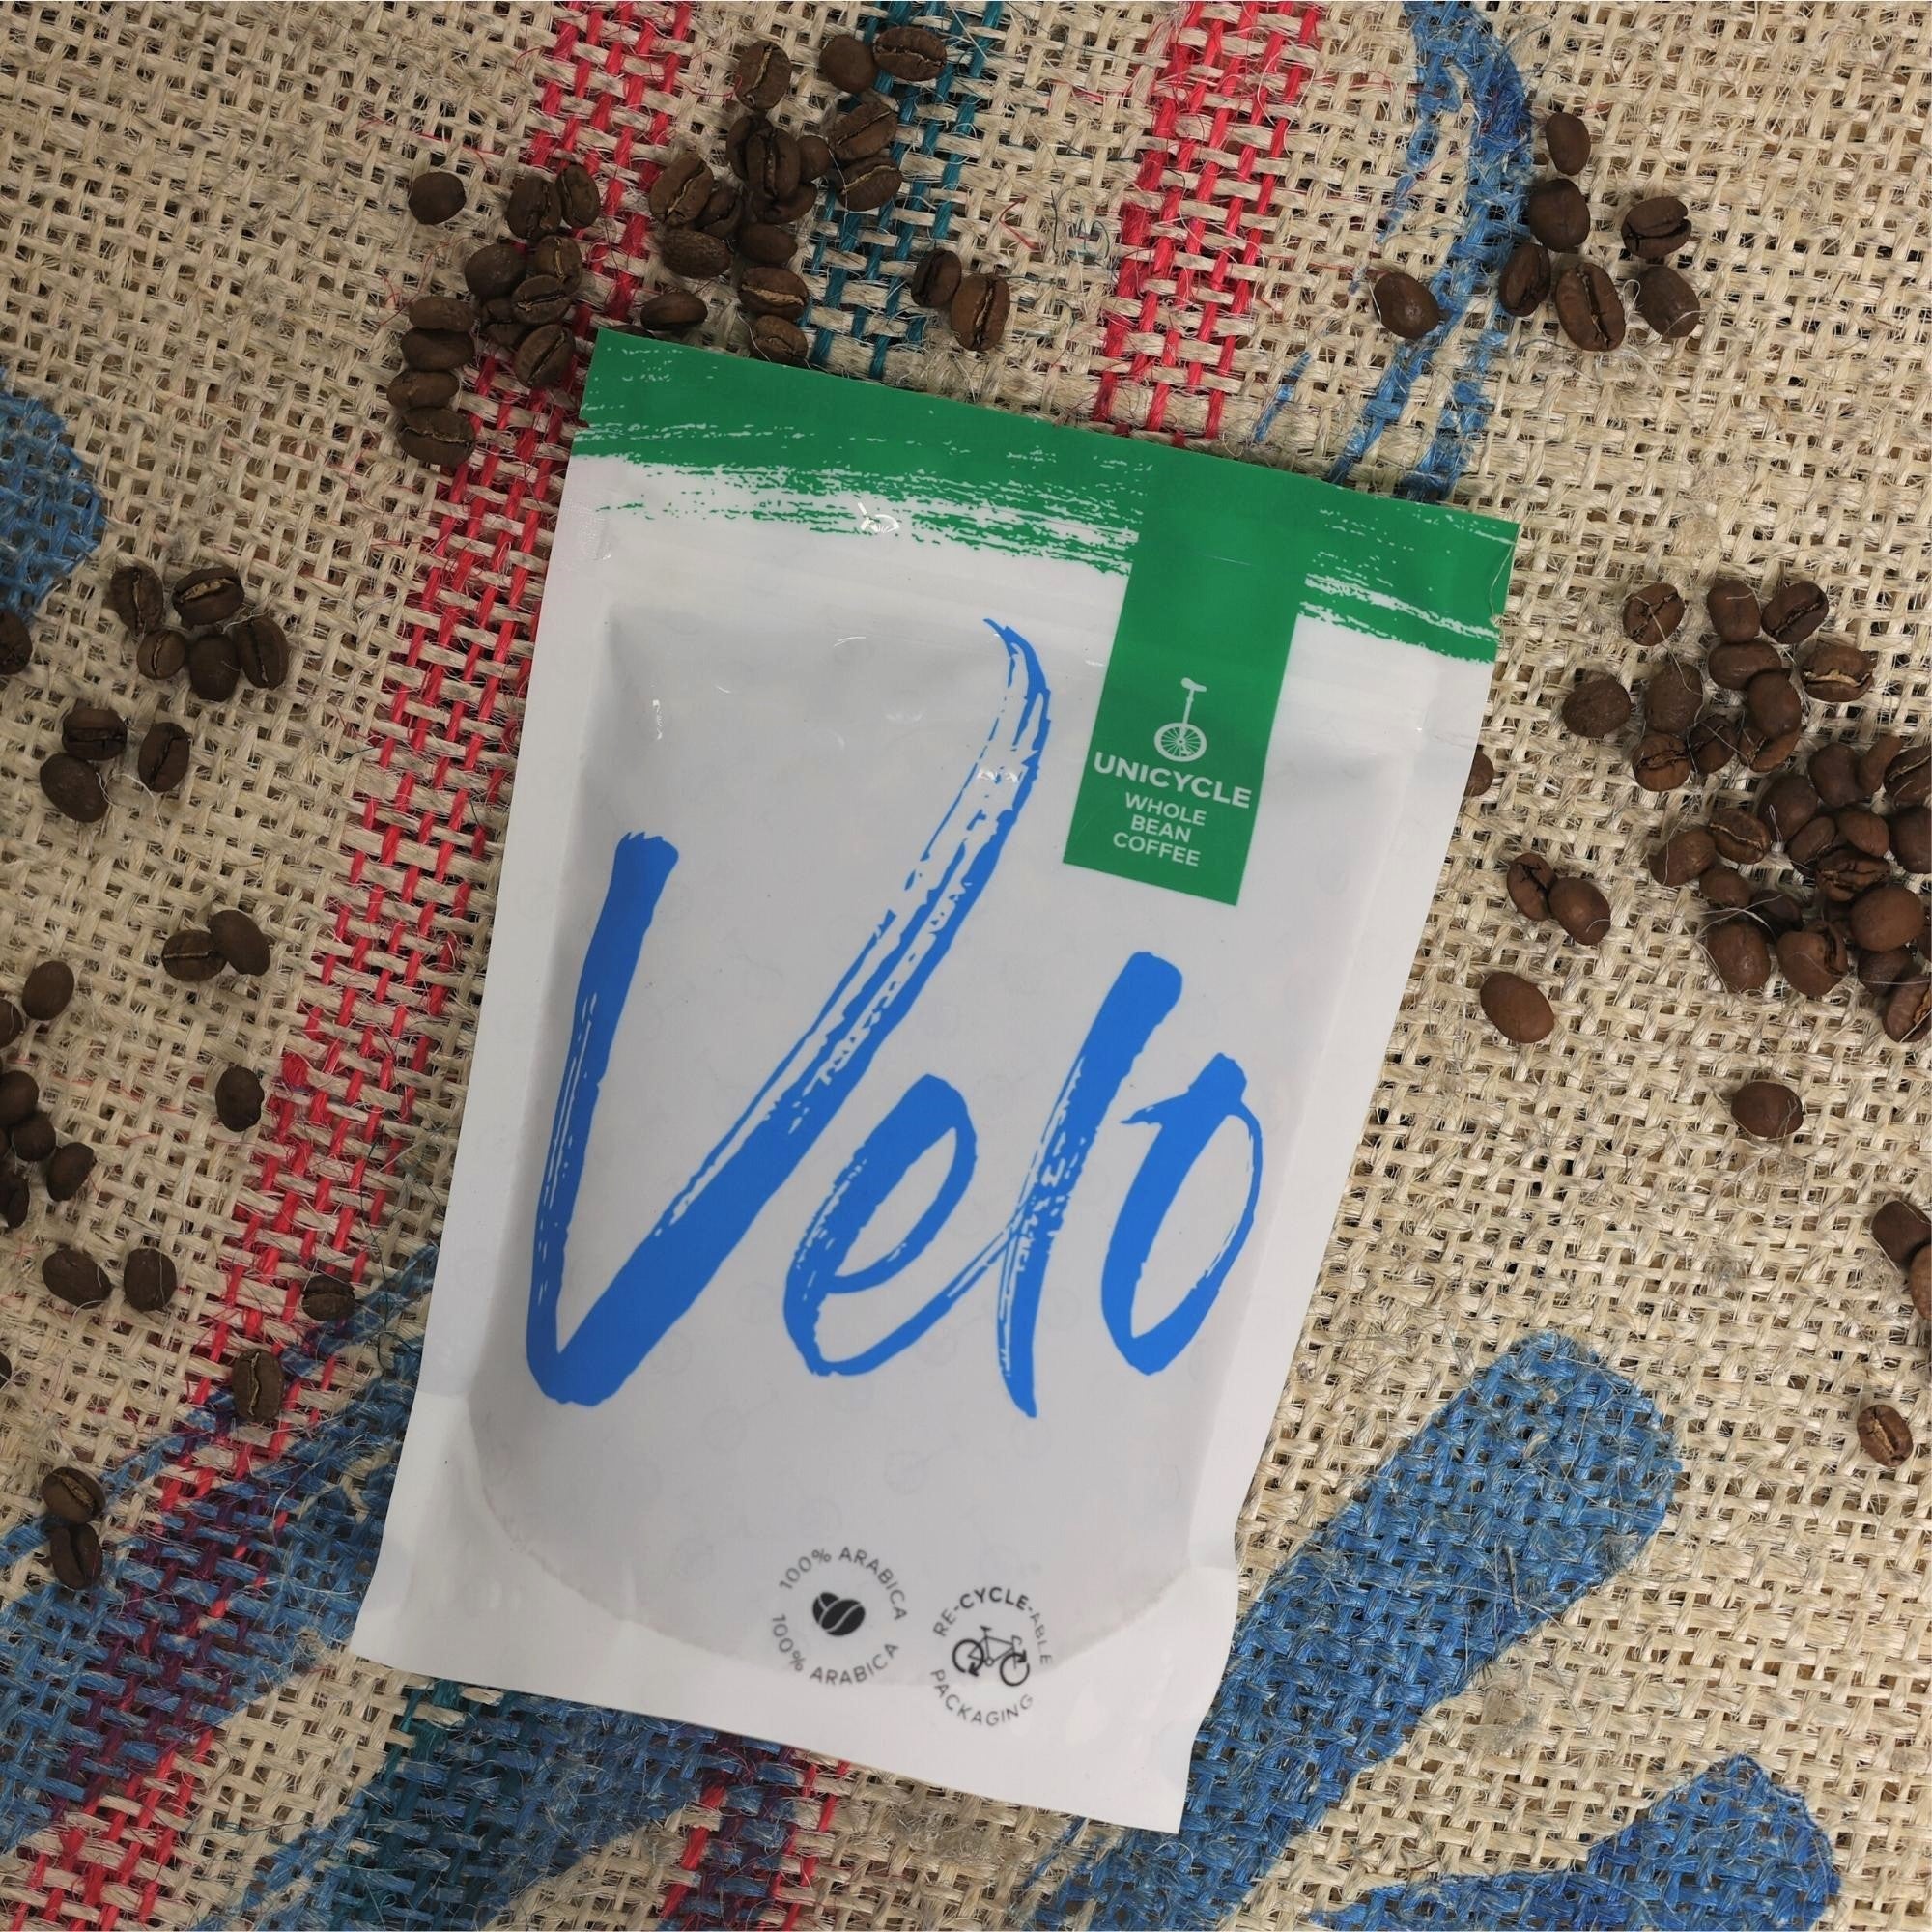 Bukhanakwa 200g Coffee Bag Uganda - Velo Coffee Roasters